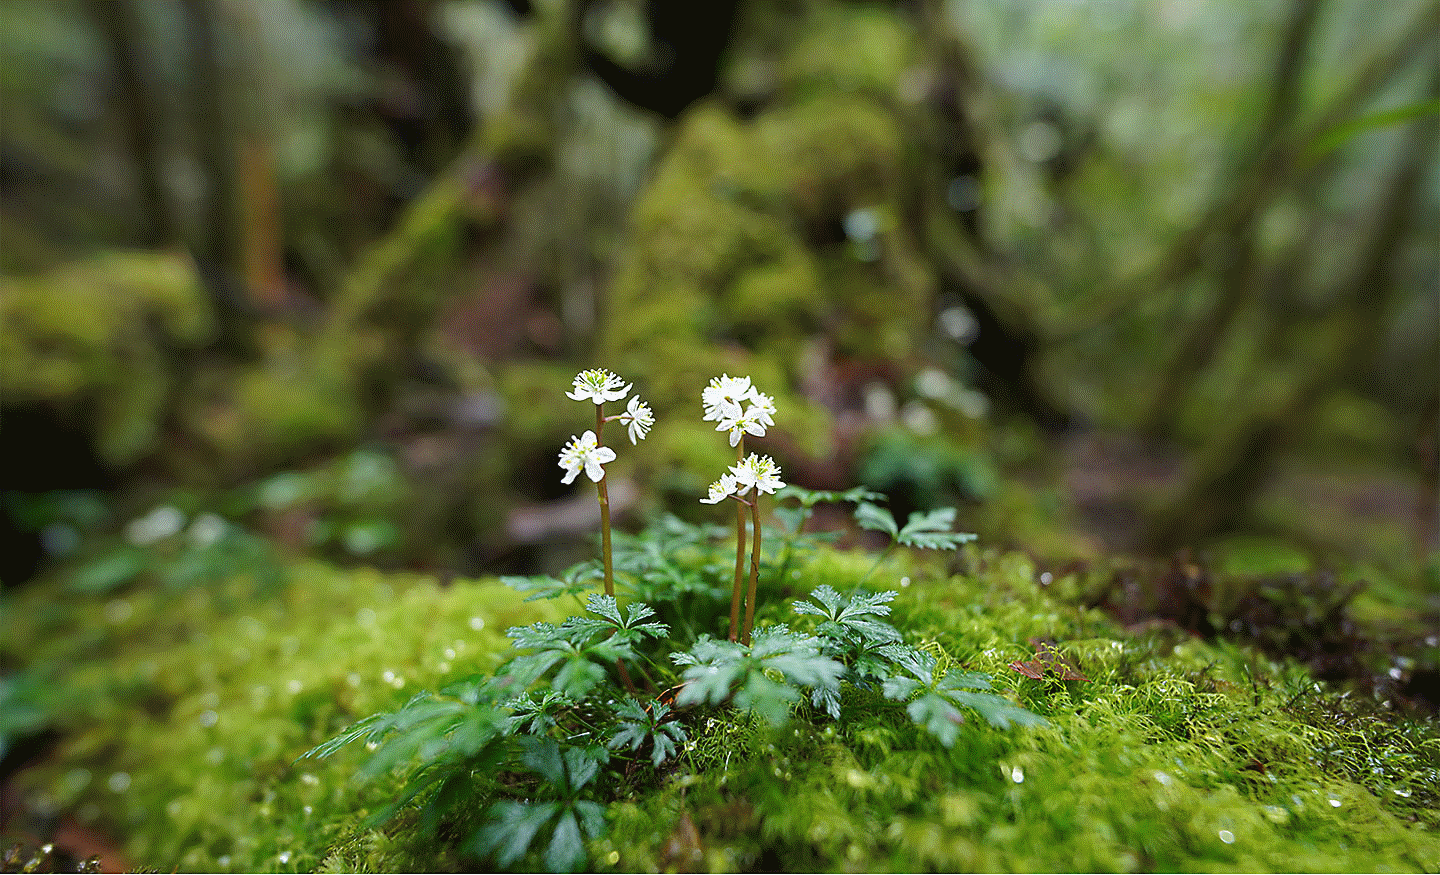 Obrázok zaostrený na malý kvet na skale v lese s veľkým rozostrením vpredu a vzadu